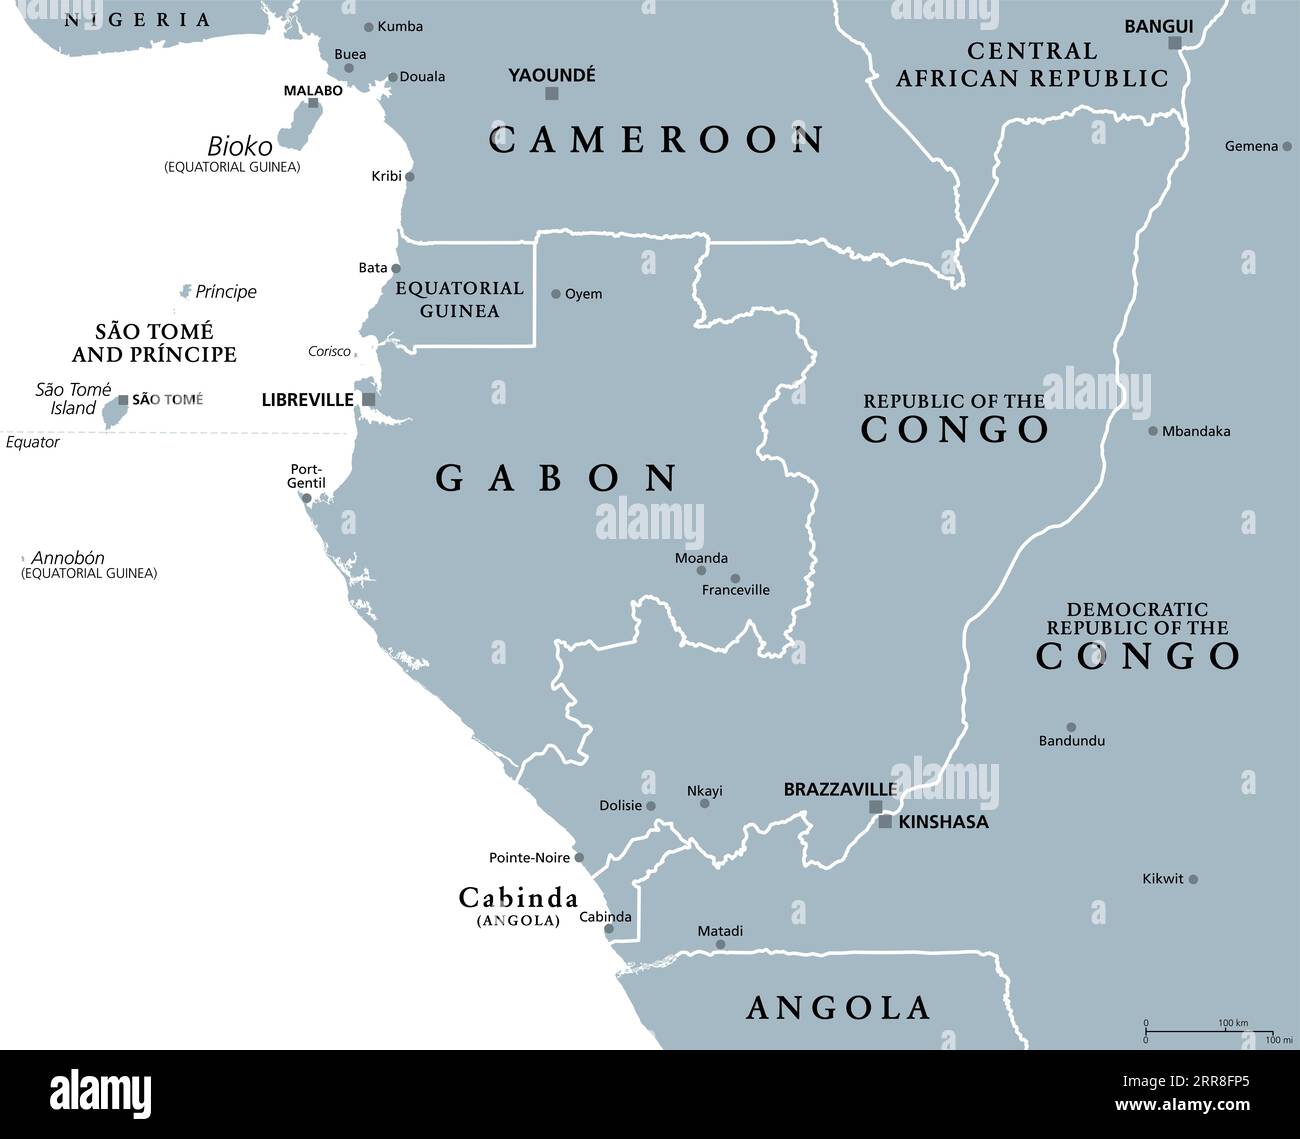 Teil Zentralafrikas, Subregion des afrikanischen Kontinents, graue politische Landkarte, mit Hauptstädten, Grenzen und größten Städten. Gabun, Kongo usw. Stockfoto